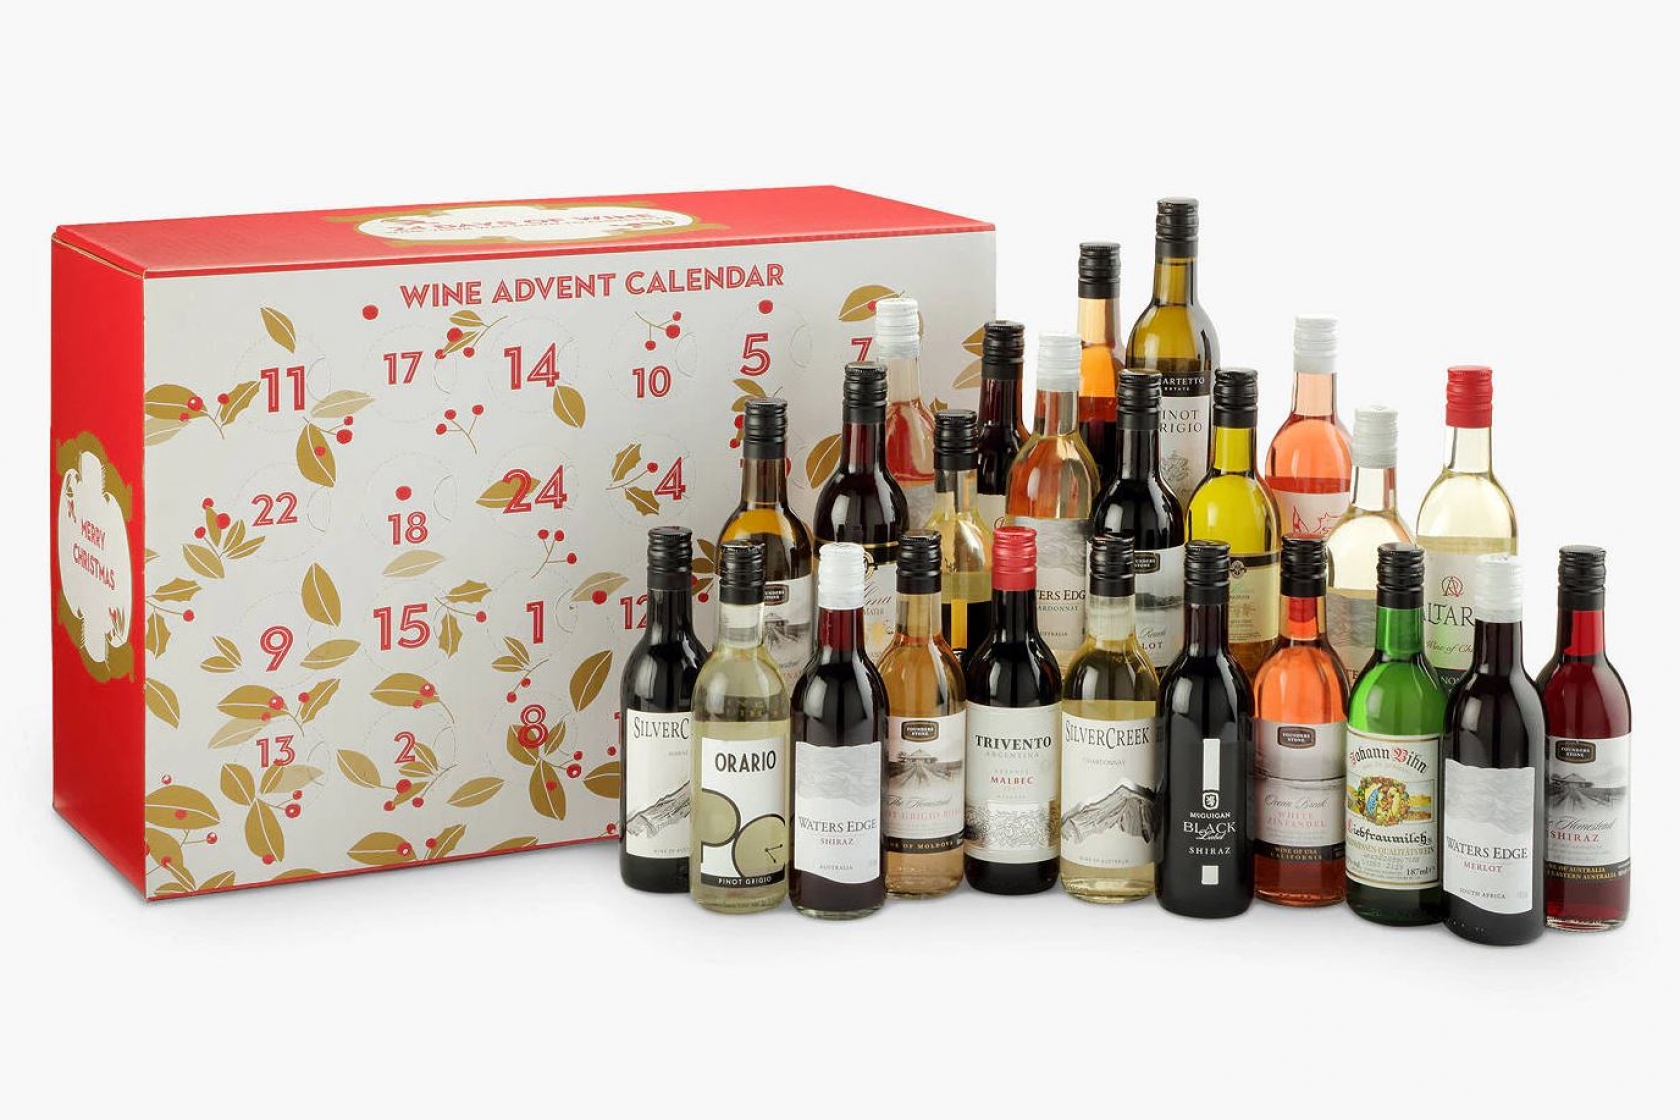 sip and savor wine advent calendar reviews